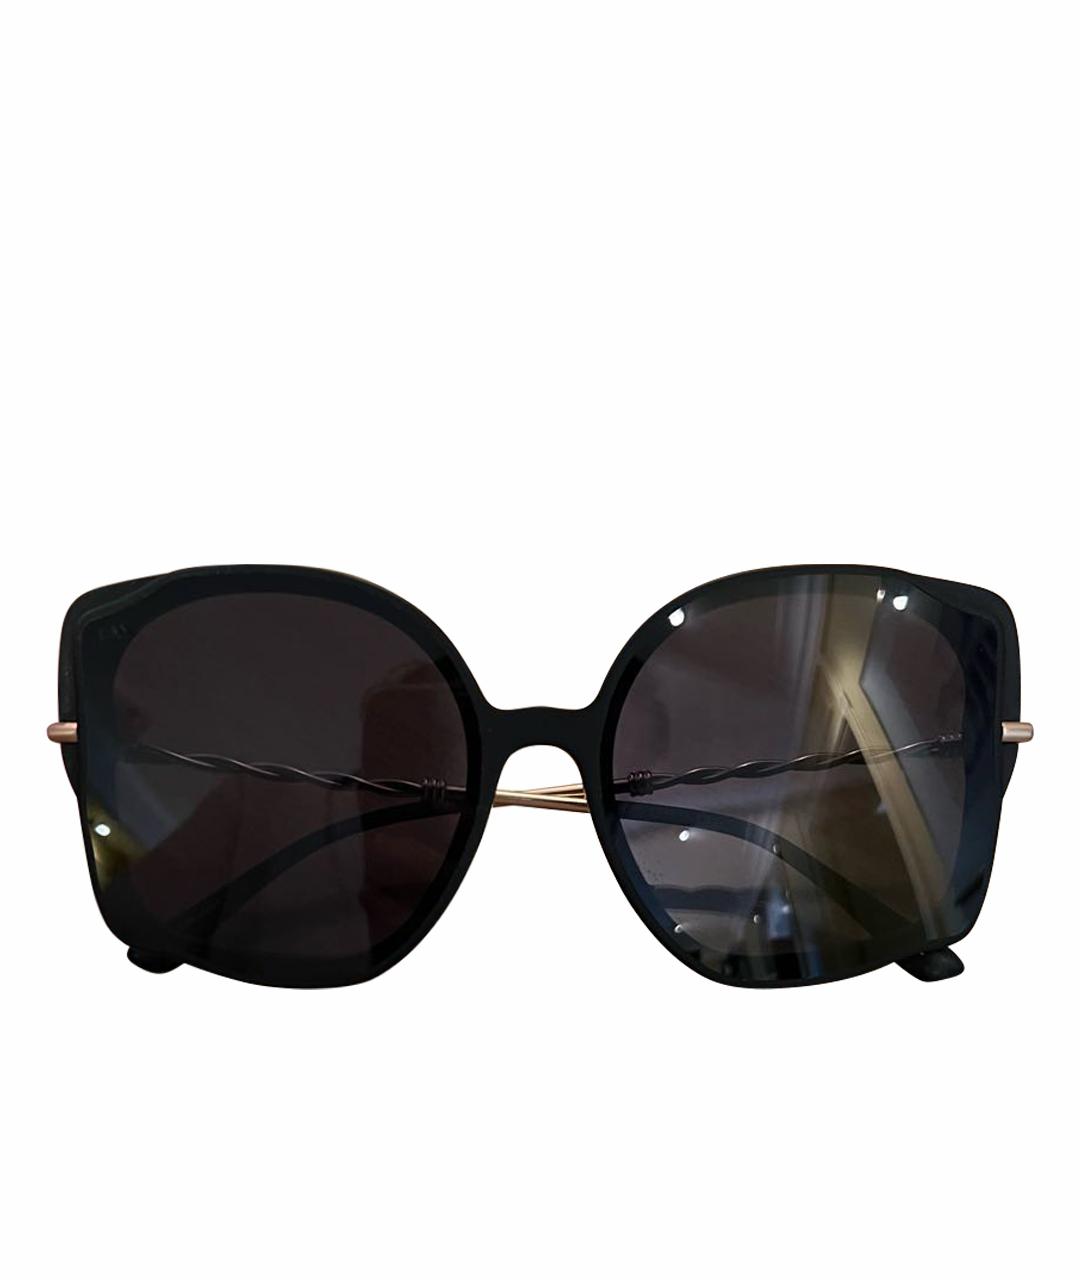 FOR ART'S SAKE Черные пластиковые солнцезащитные очки, фото 1